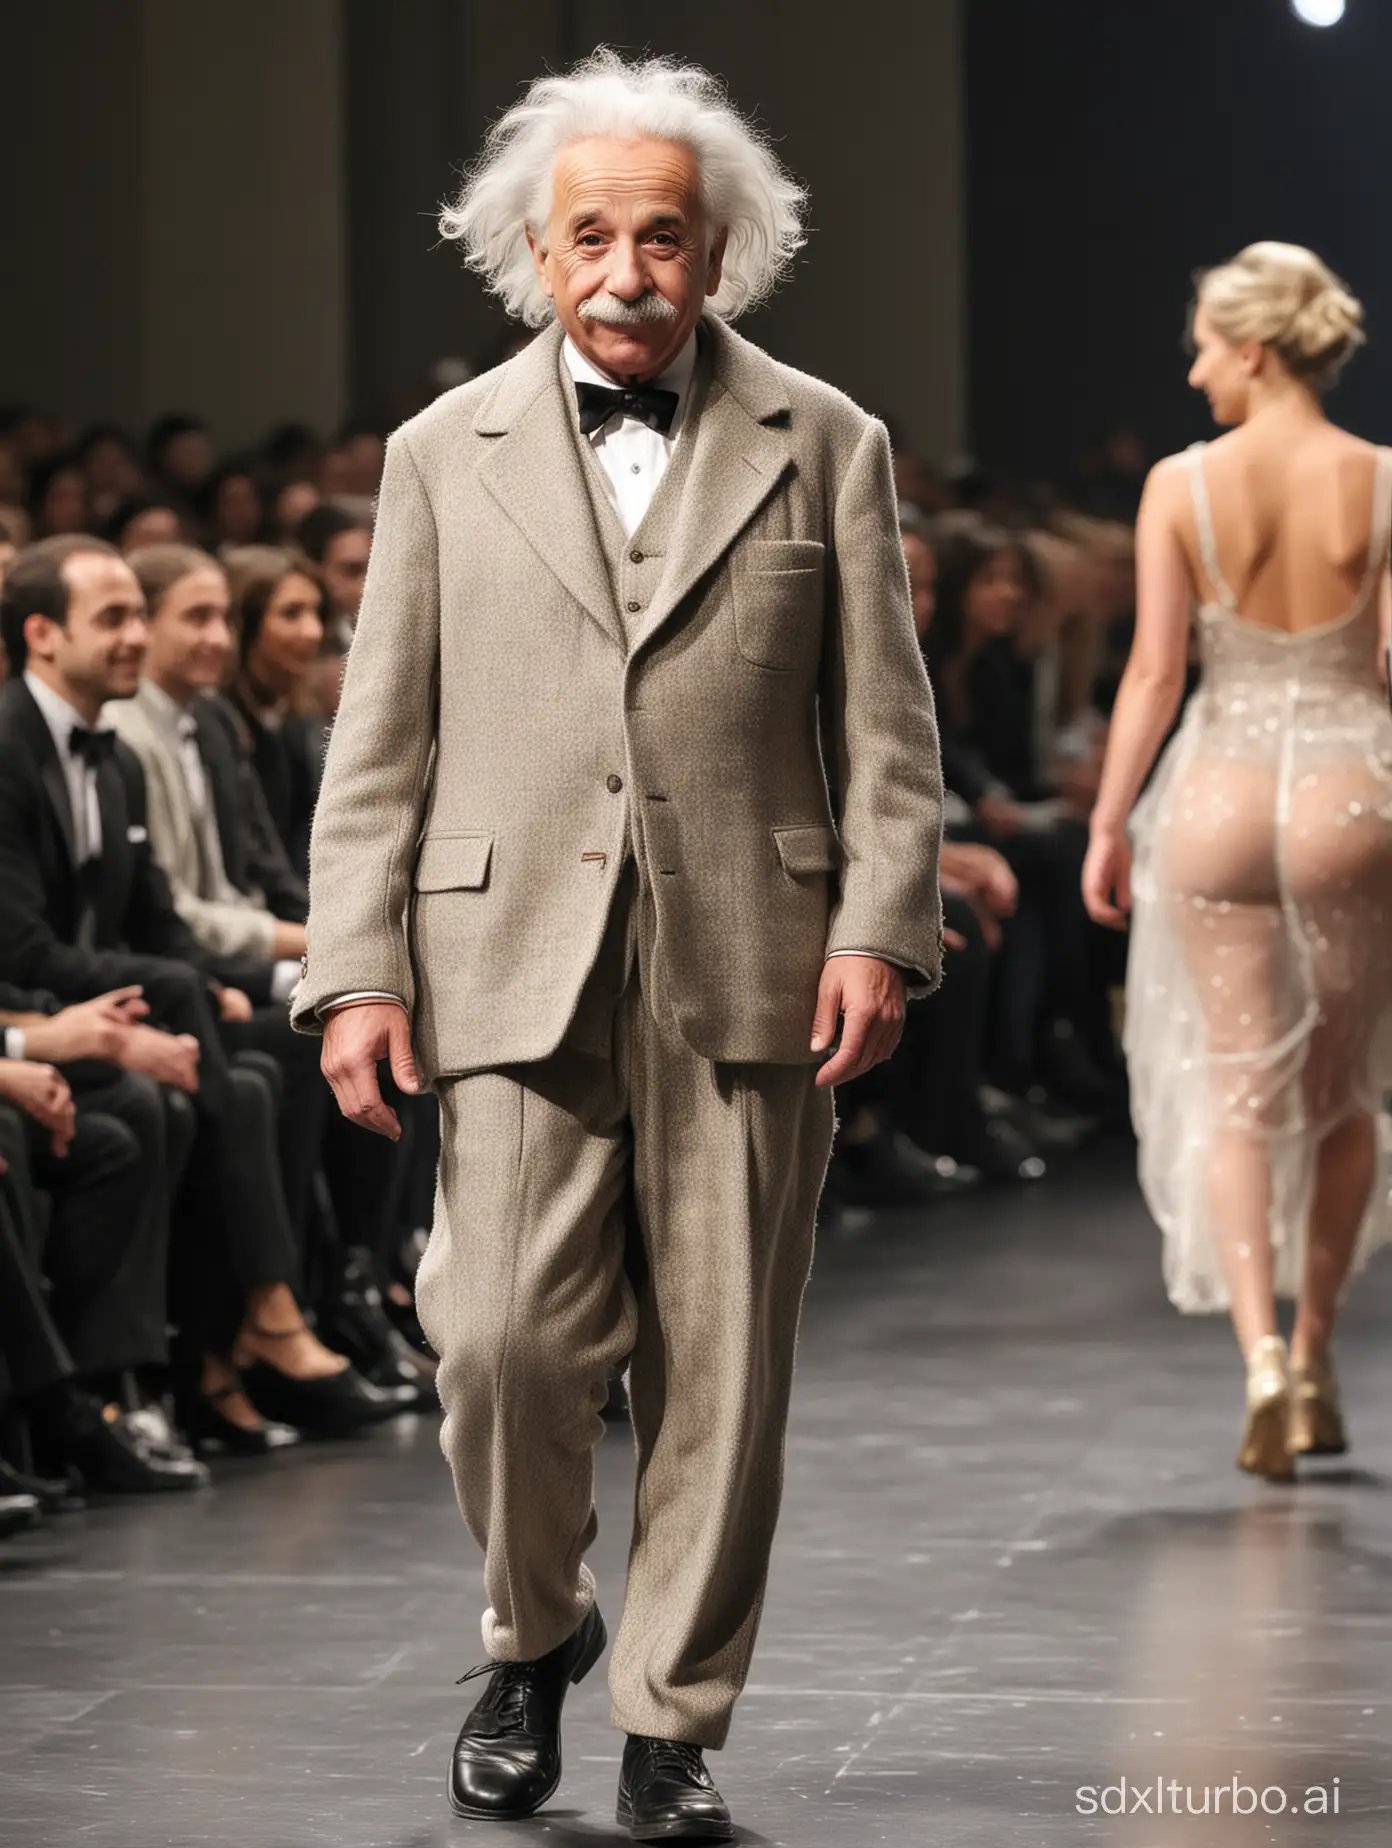 Eccentric-Albert-Einstein-Stuns-Paris-Runway-Crowd-with-Outrageous-Fashion